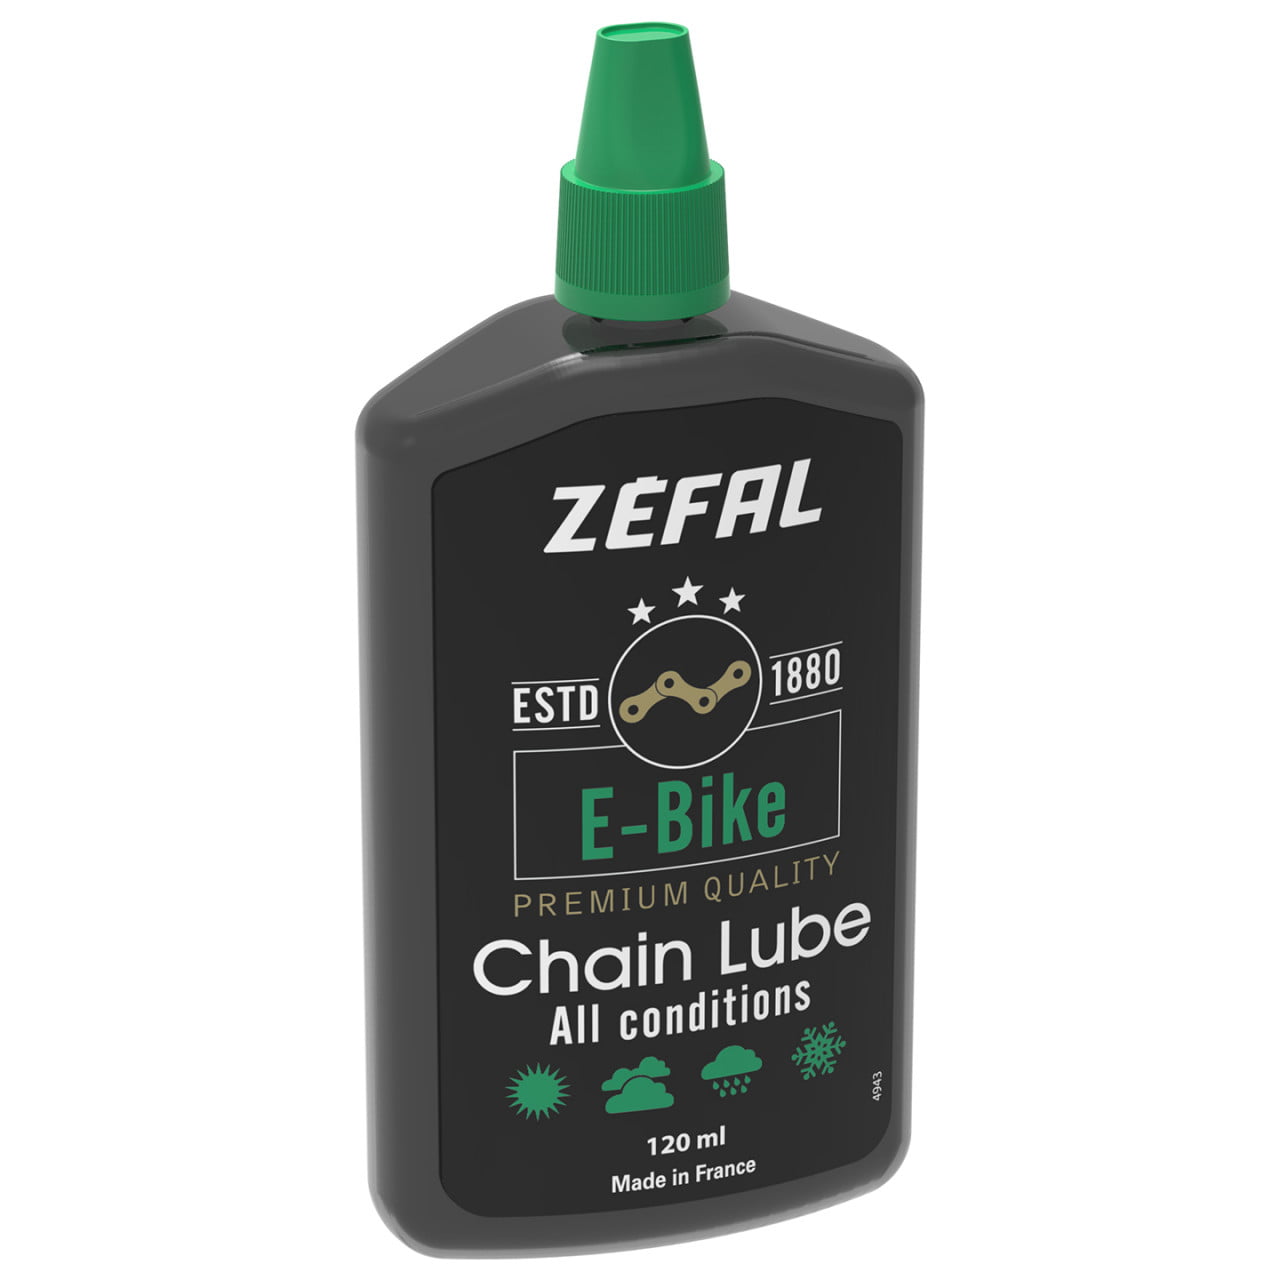 E-Bike 120 ml Chain Lube